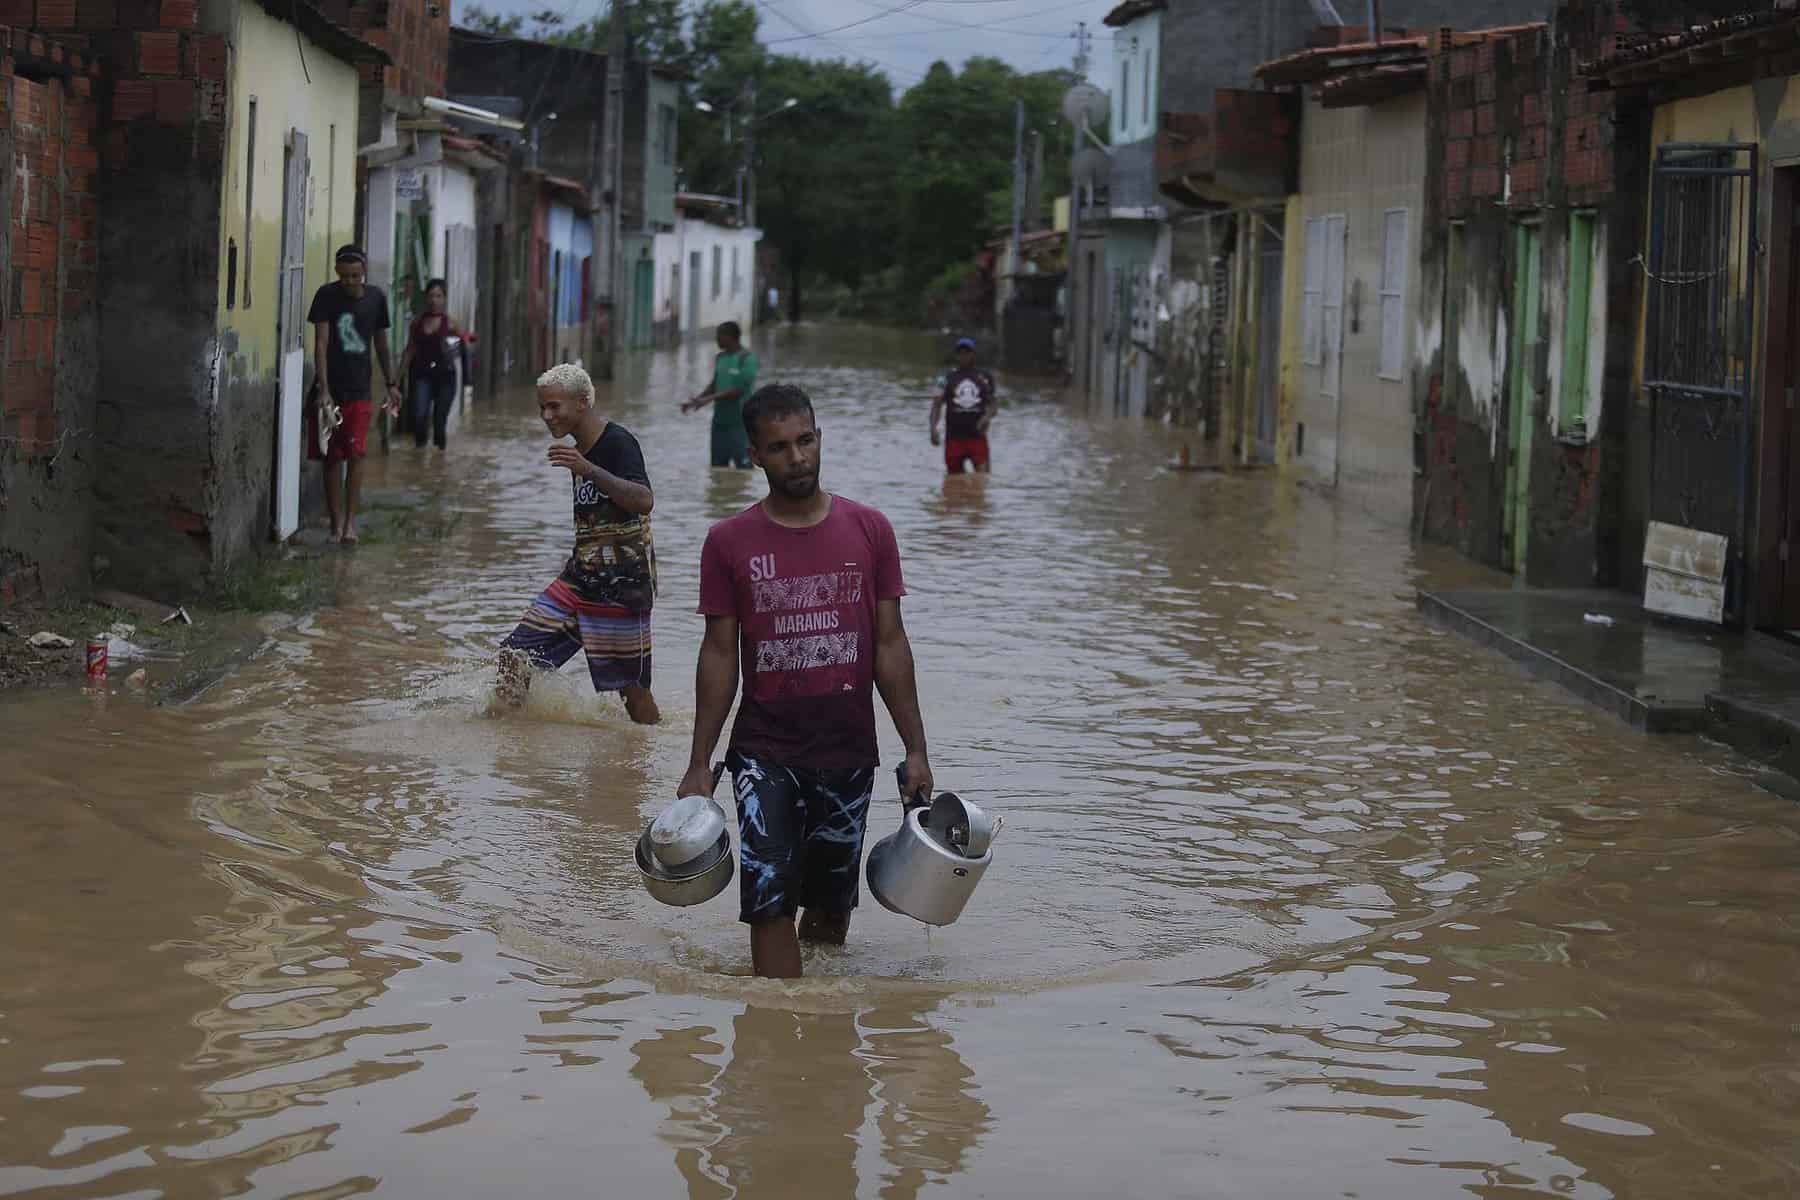 El número de muertos a causa de las lluvias e inundaciones en estado de Bahía, noreste de Brasil, ascendió hoy a 21, mientras que más de 77.000 personas fueron evacuadas